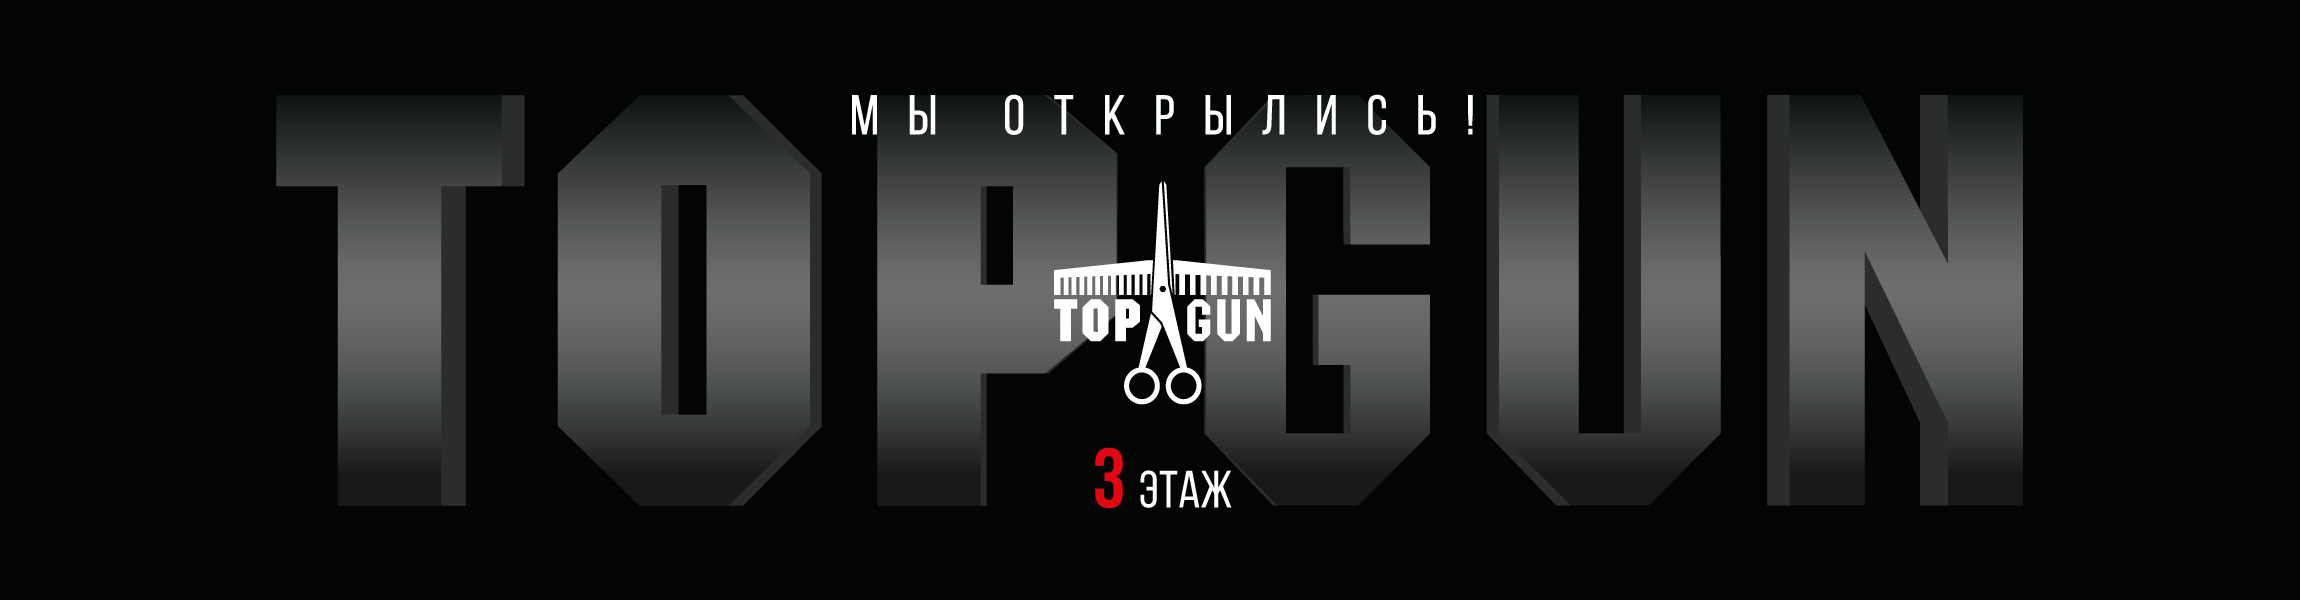 TOPGUN - международная сеть барбершопов.